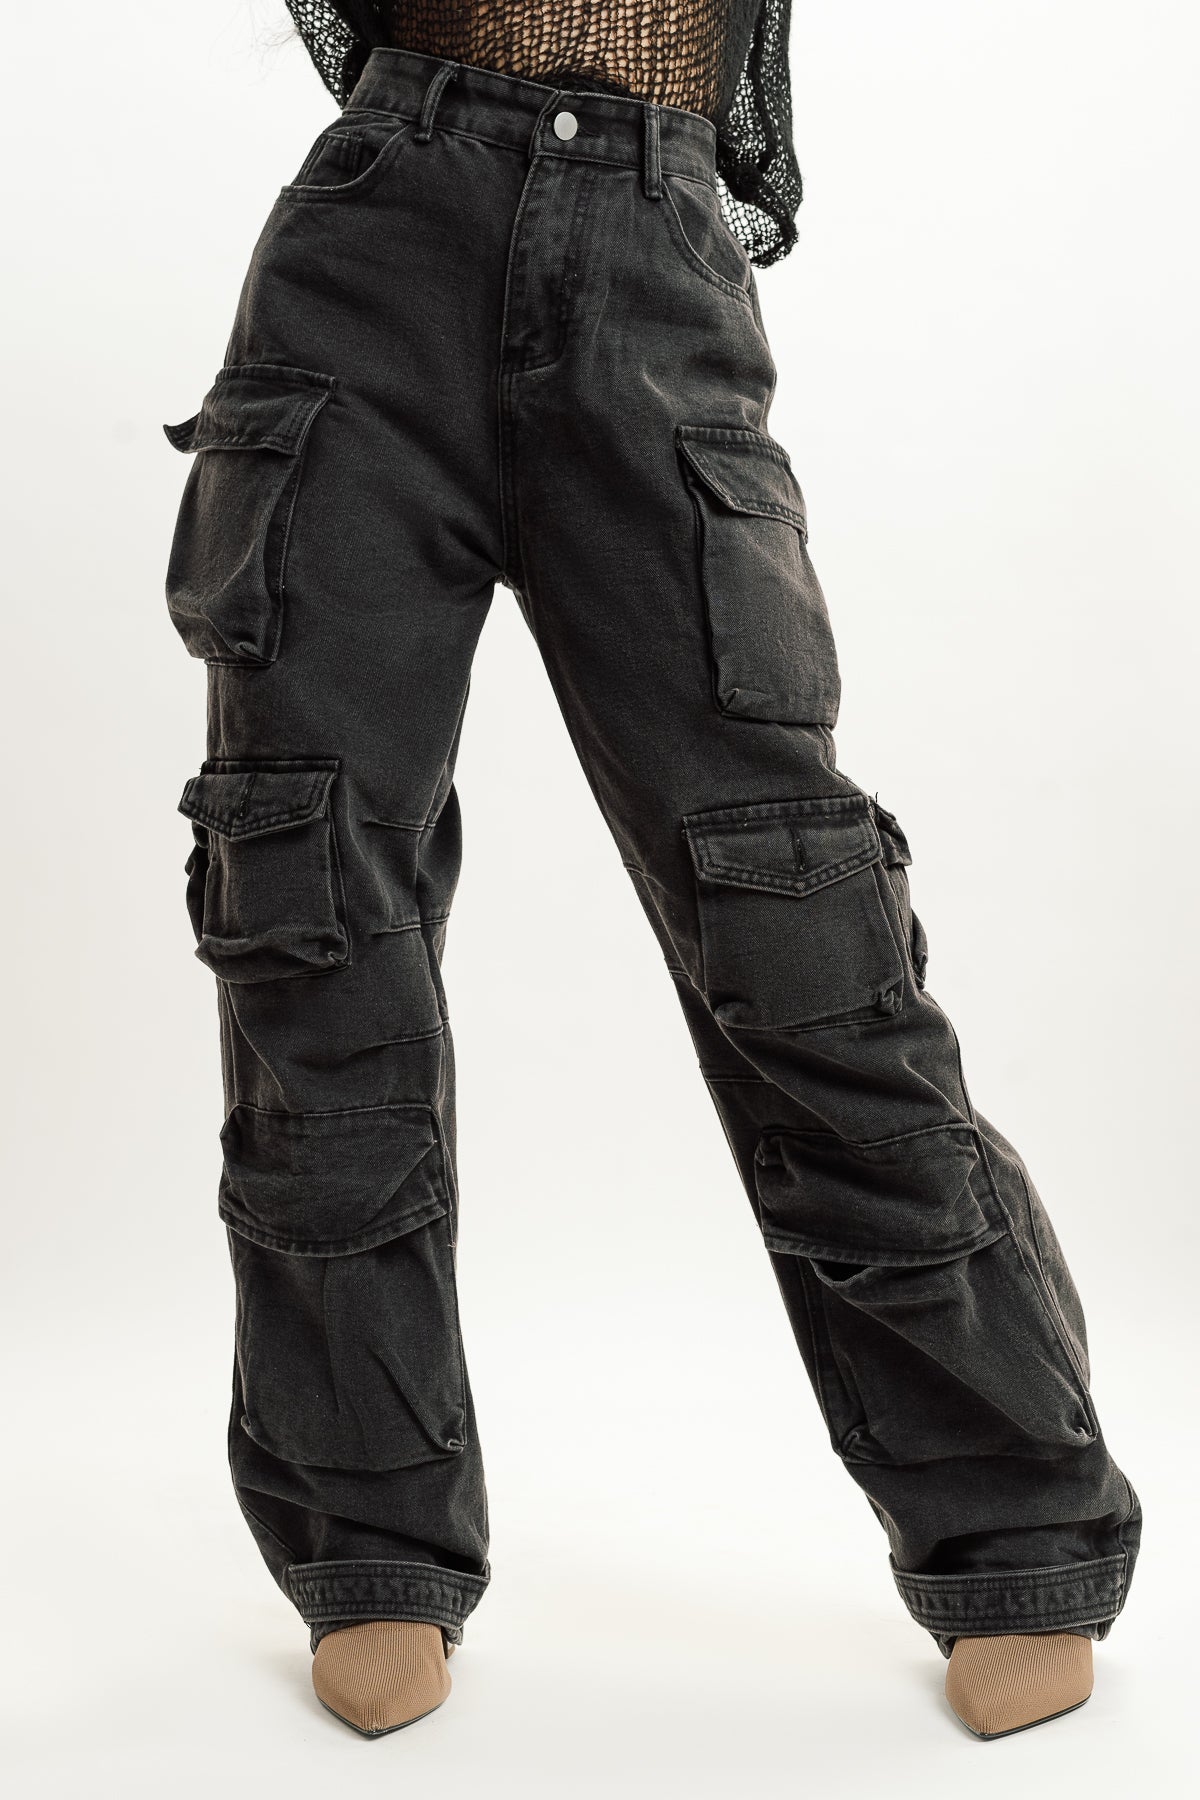 How to style women's cargo pants - Quora